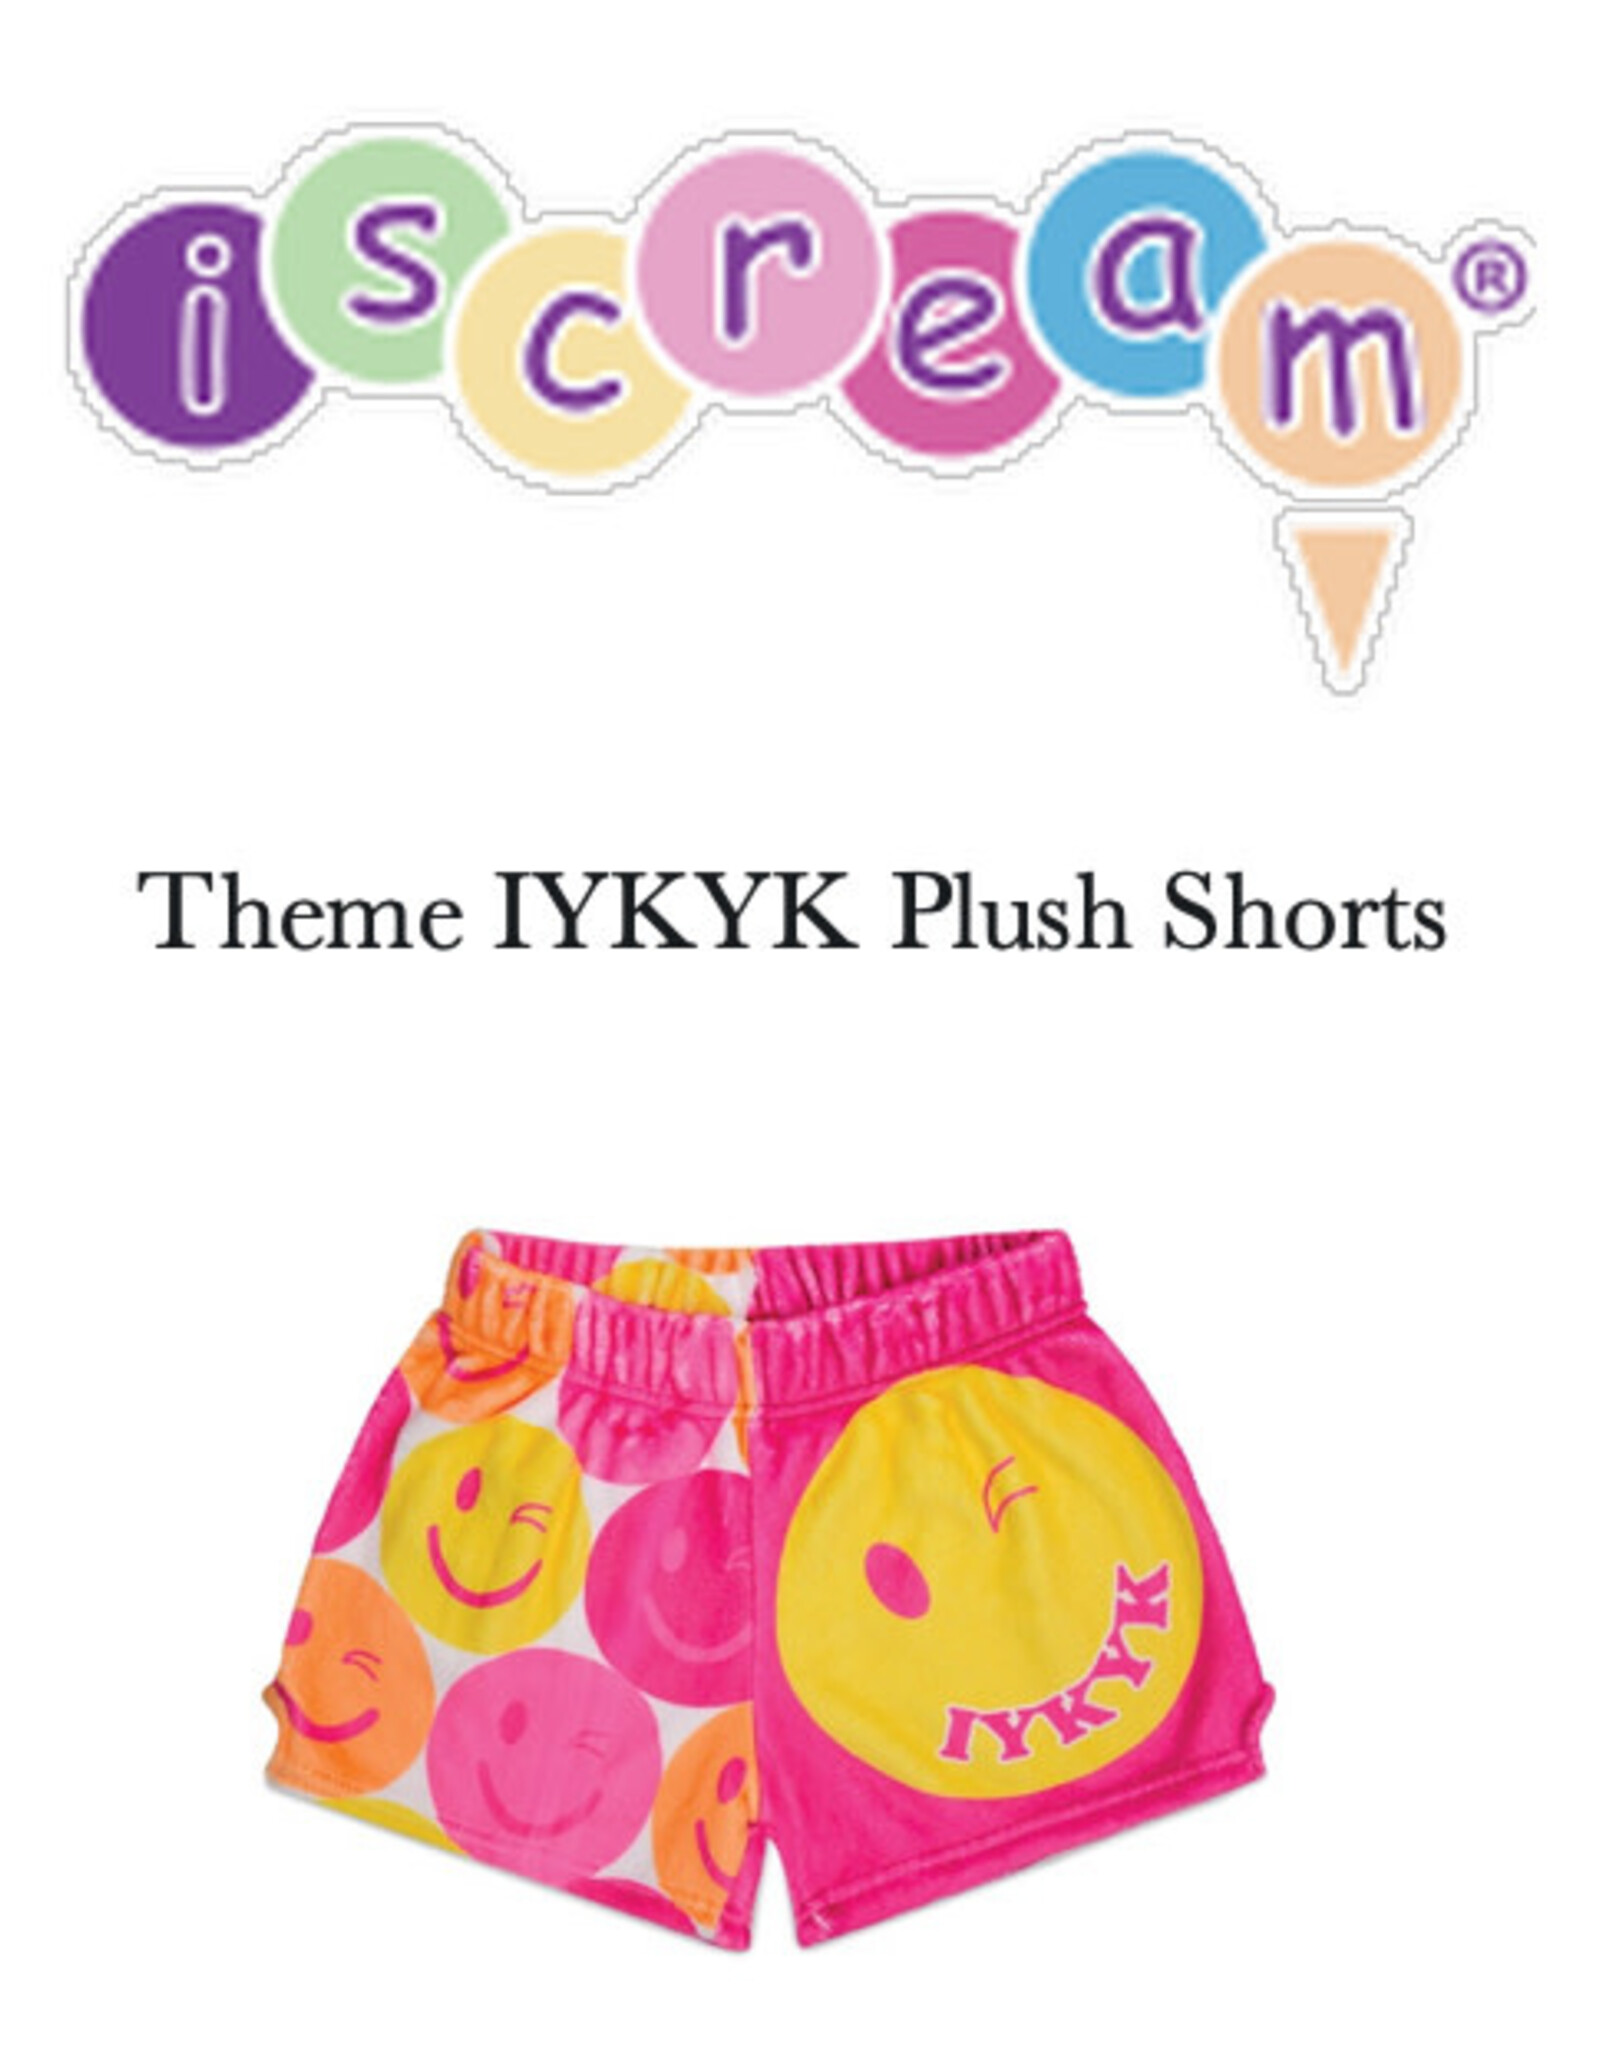 Iscream Theme IYKYK Plush Shorts